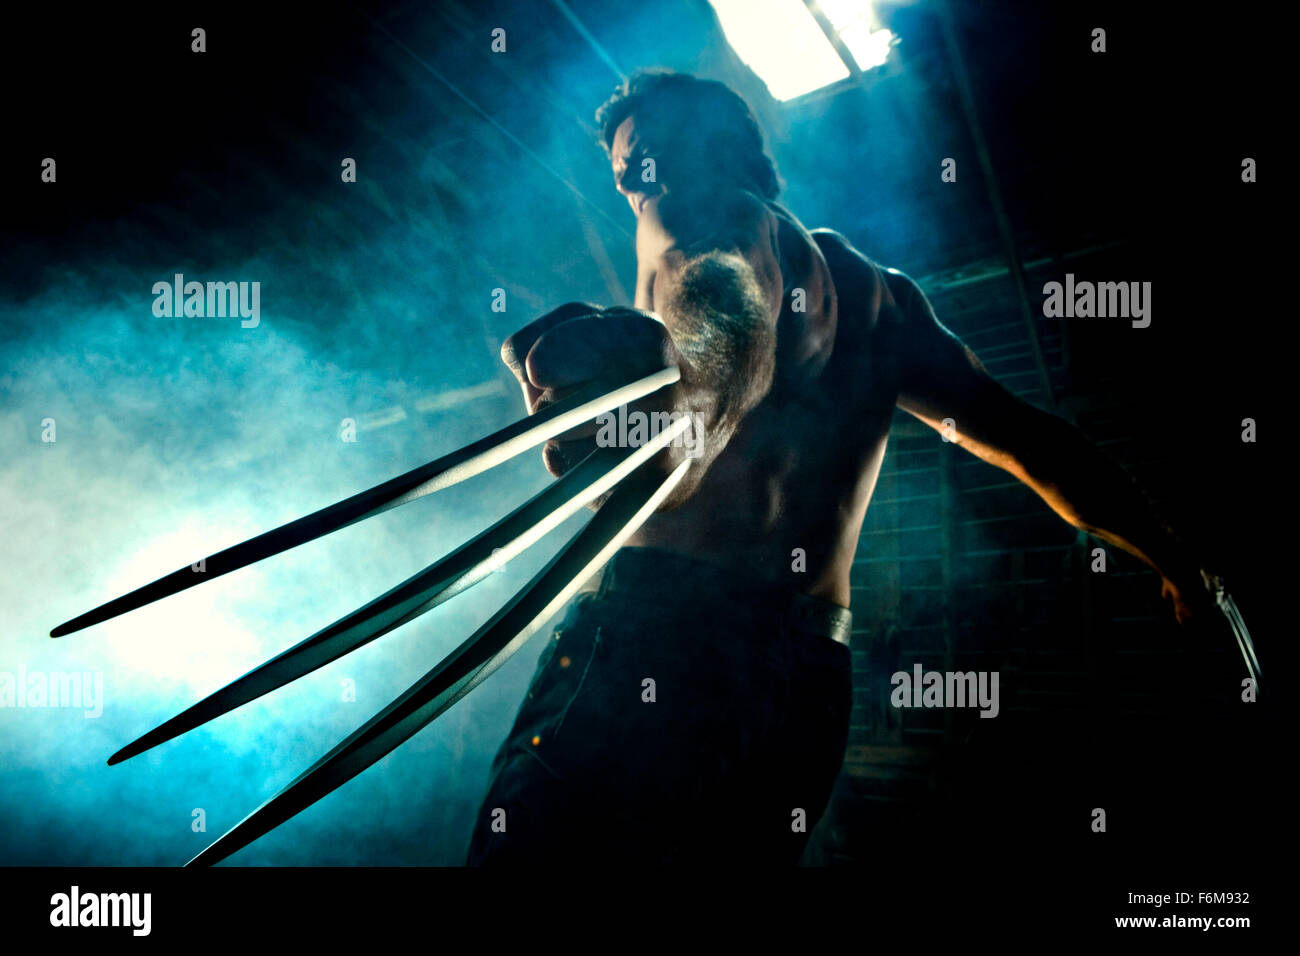 Data di rilascio: maggio 01, 2009. Il titolo del filmato: X-Men Origins: Wolverine. STUDIO: la meraviglia delle imprese. Trama: Wolverine vive una vita mutante, cerca la vendetta contro Victor Creed (che diventerà poi Sabertooth) per la morte della sua fidanzata e infine finisce per andare attraverso il mutante Arma X programma. Nella foto: Hugh Jackman come Logan / Wolverine. Foto Stock